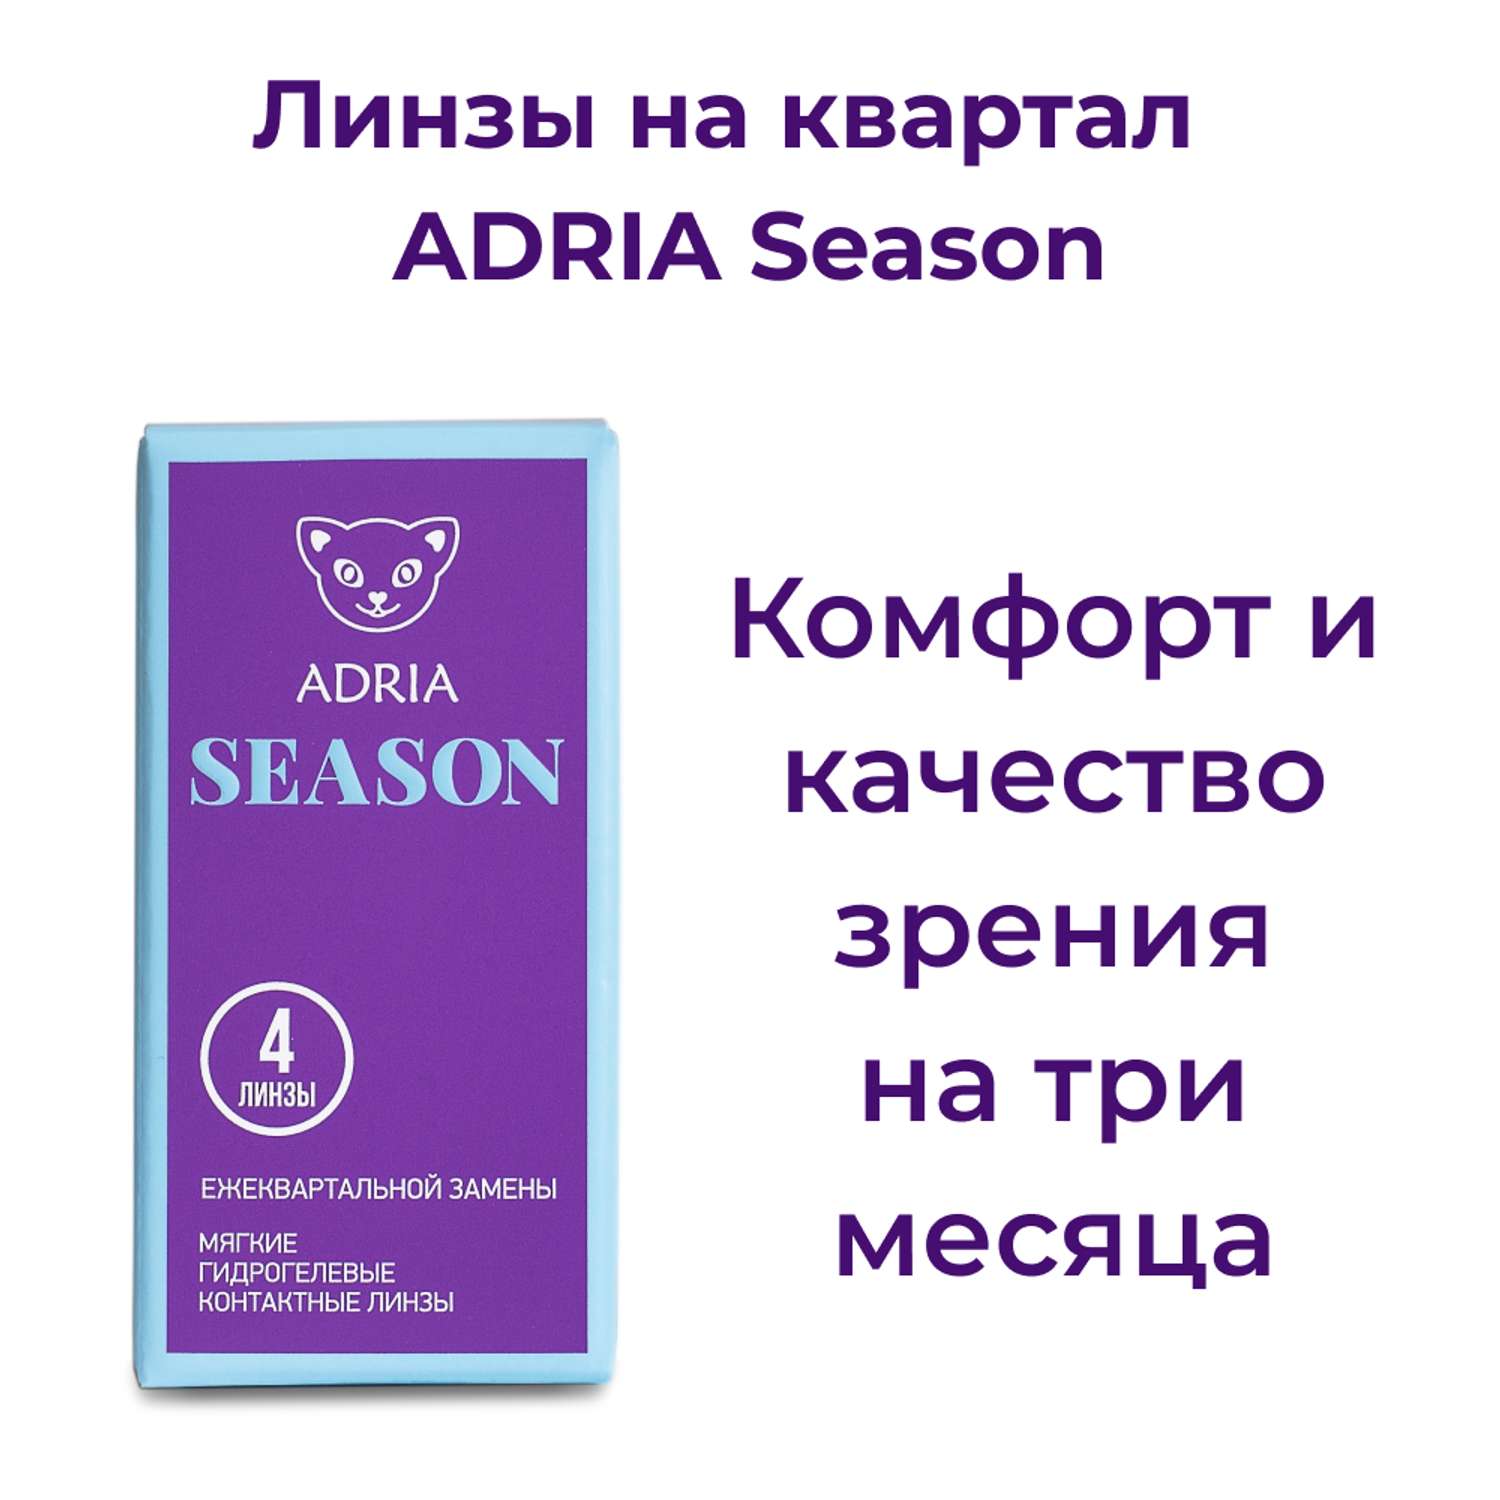 Контактные линзы ADRIA Season 4 линзы R 8.6 -5.75 - фото 2